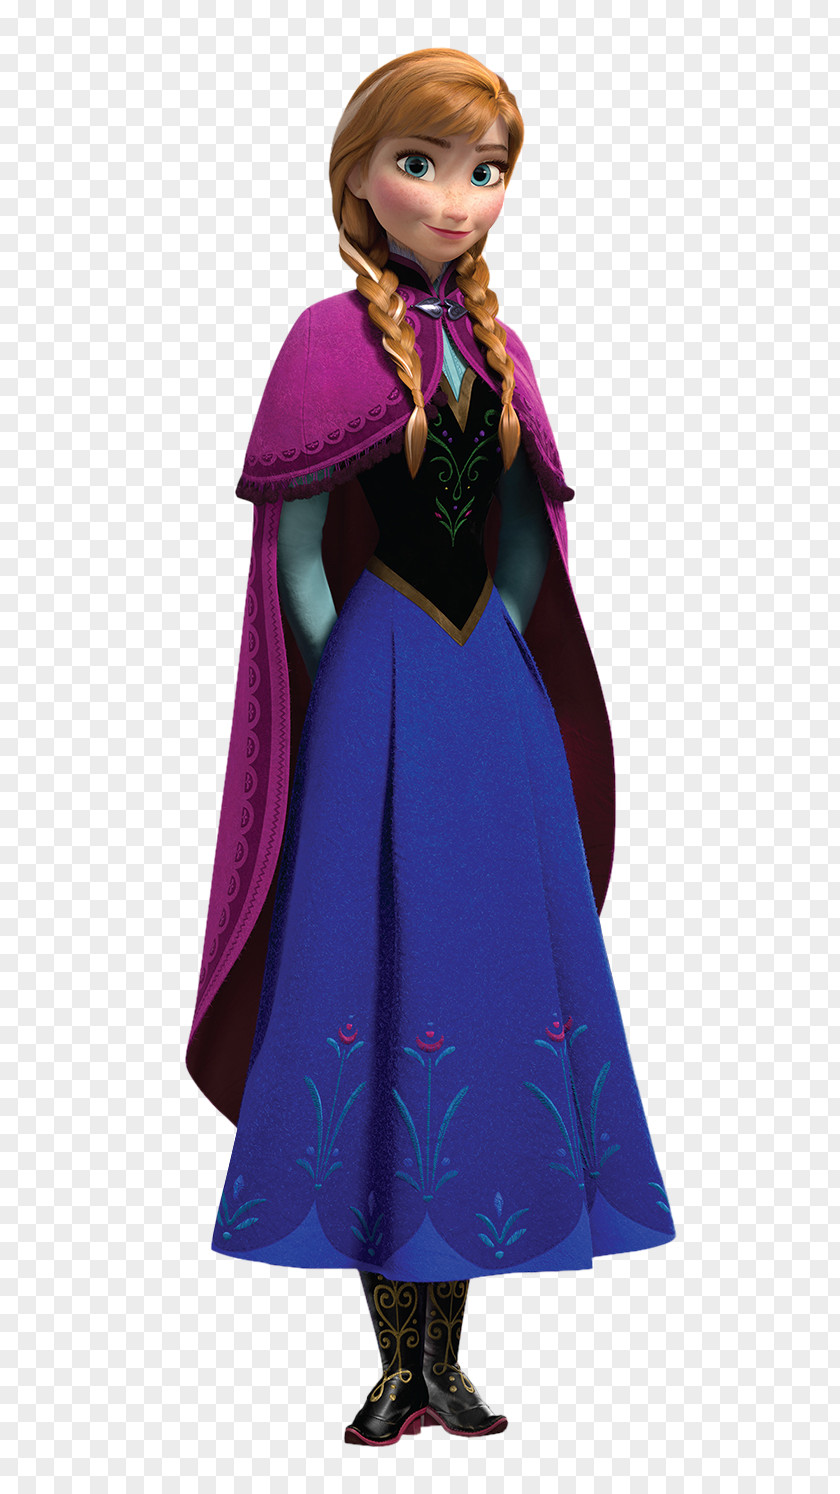 Princess Anna Frozen PNG Clip Art Image Frozen: Olaf's Quest Elsa Kristoff PNG